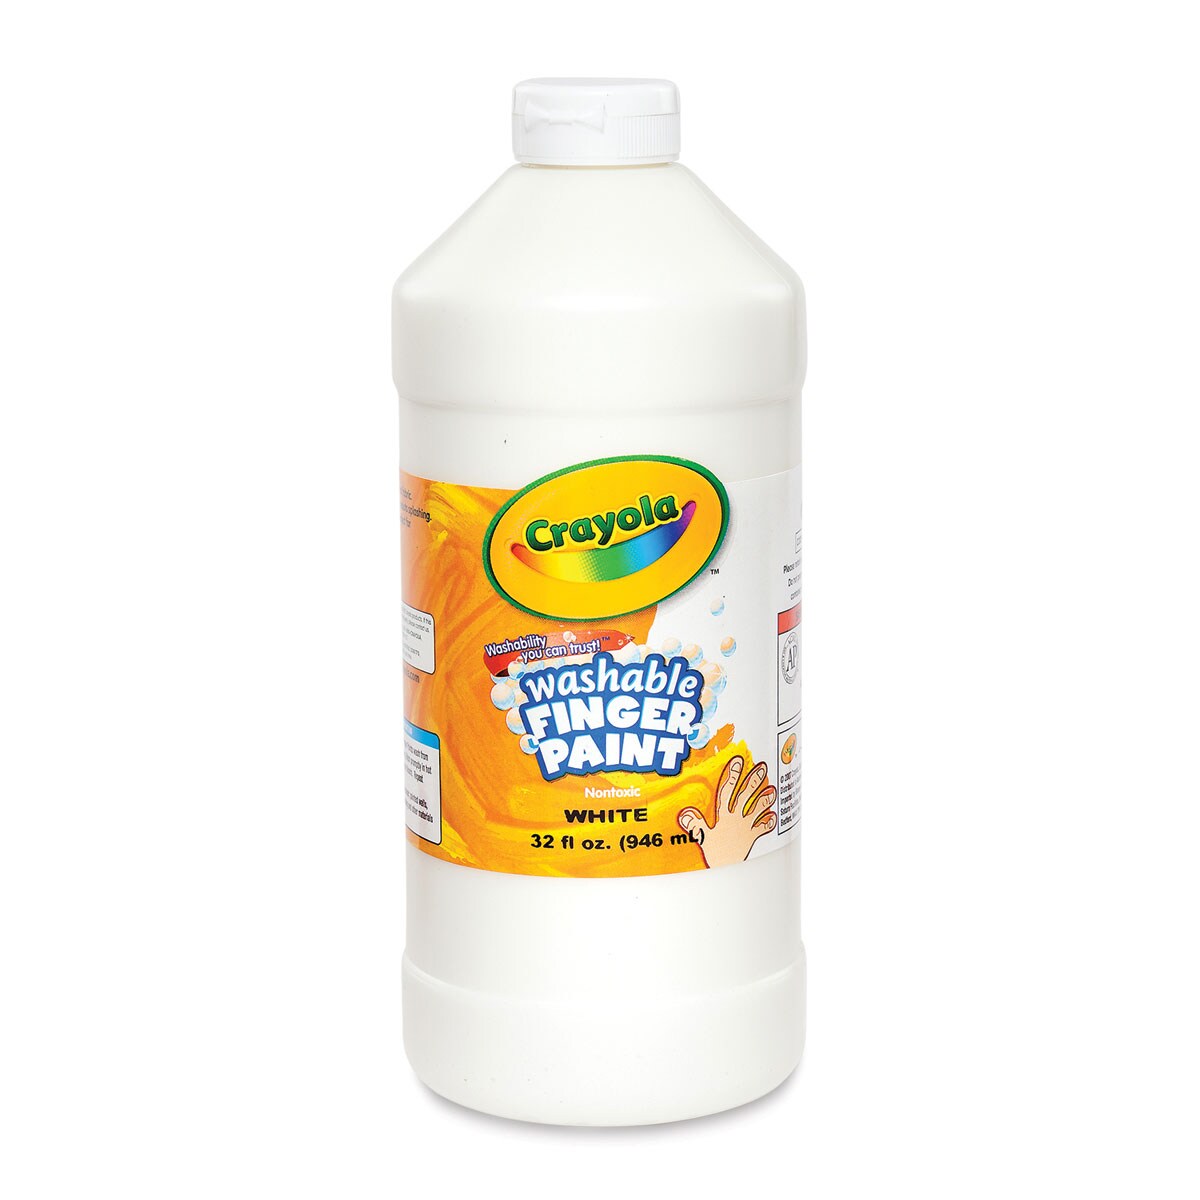 Crayola Washable Fingerpaint - White, 32 oz bottle